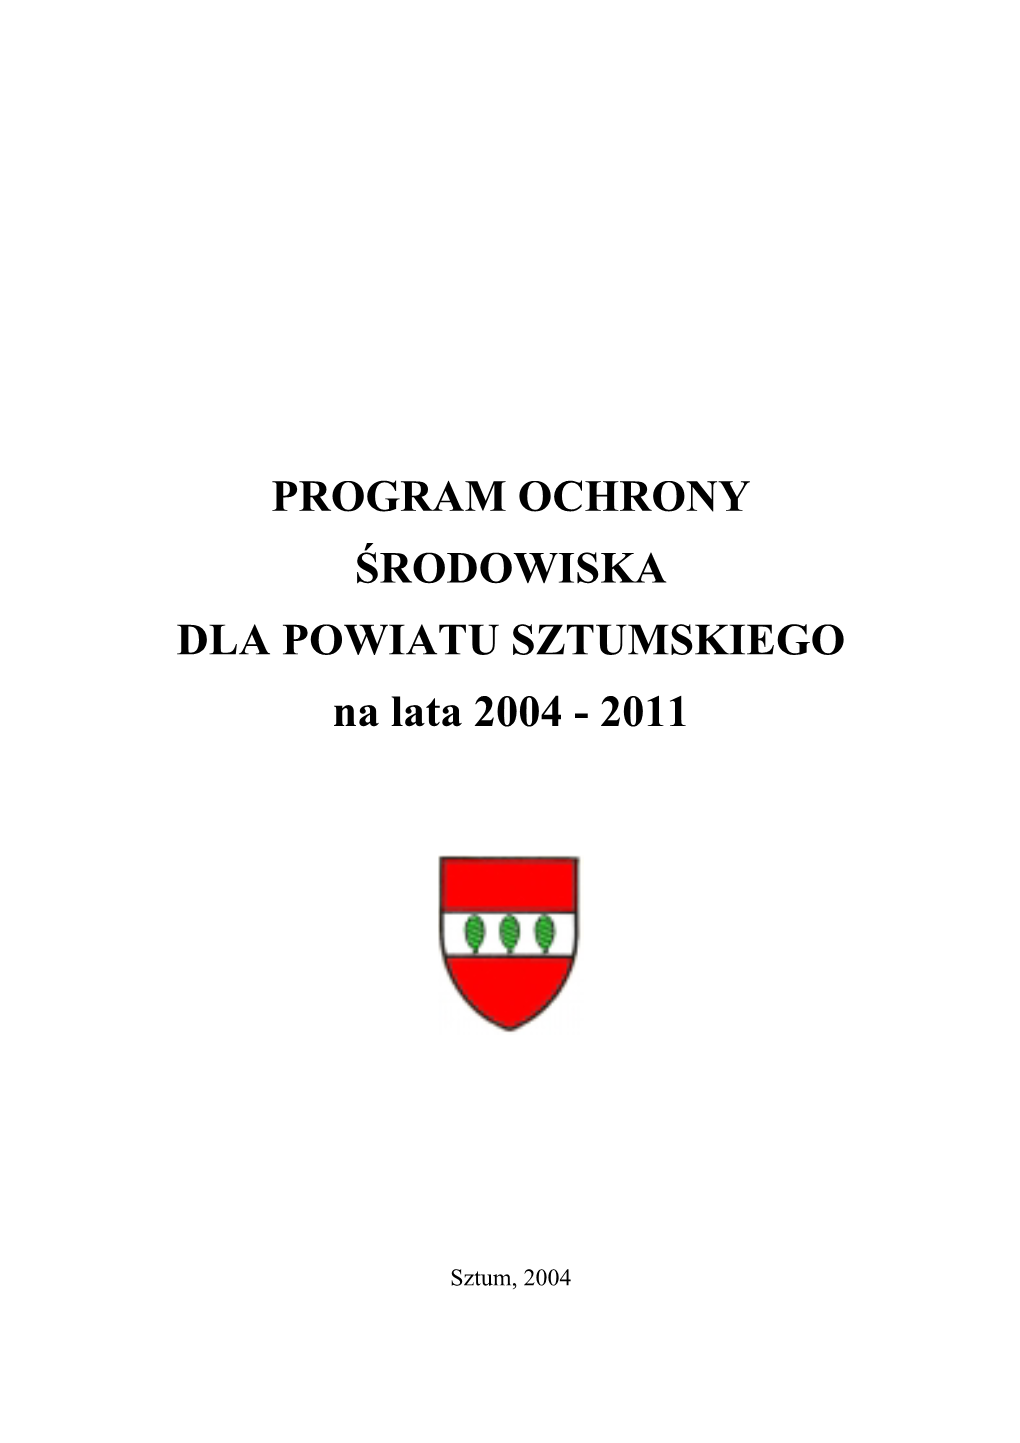 PROGRAM OCHRONY ŚRODOWISKA DLA POWIATU SZTUMSKIEGO Na Lata 2004 - 2011